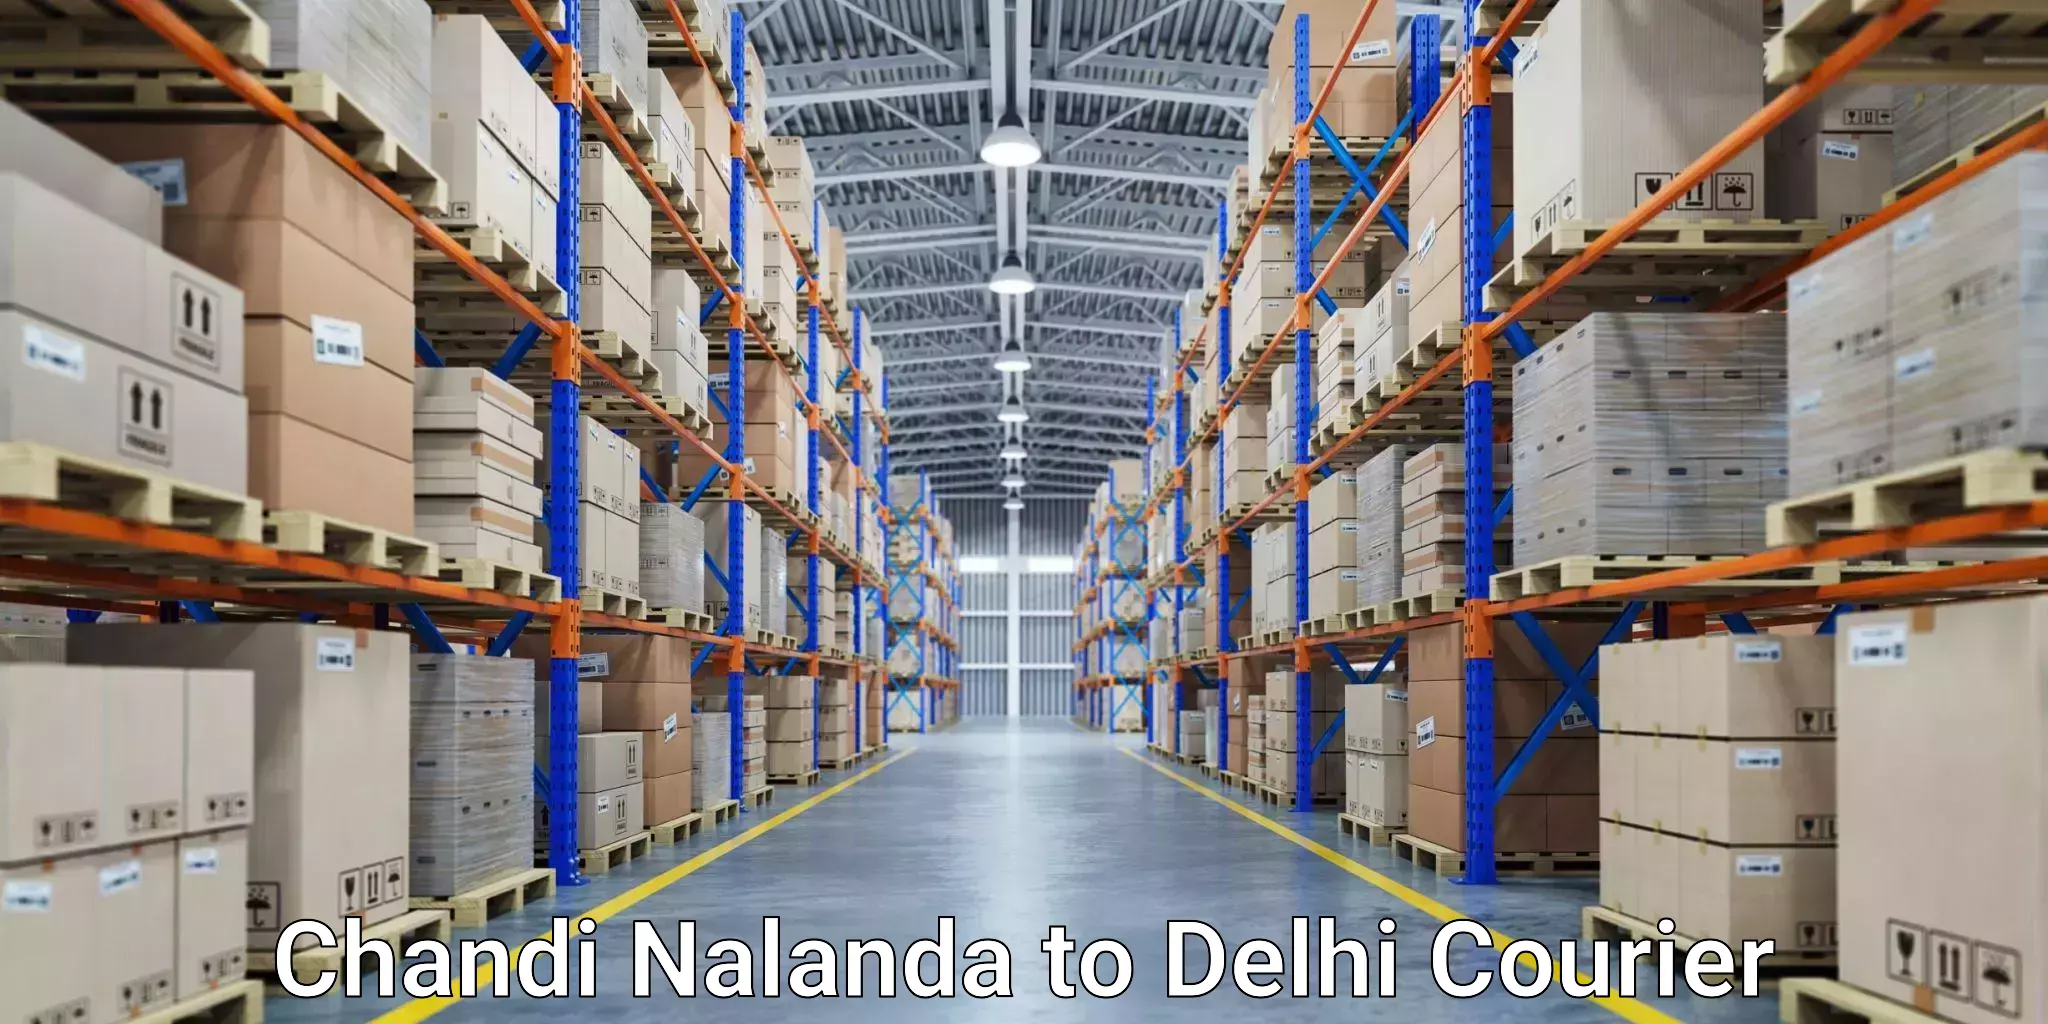 Express package handling in Chandi Nalanda to NCR